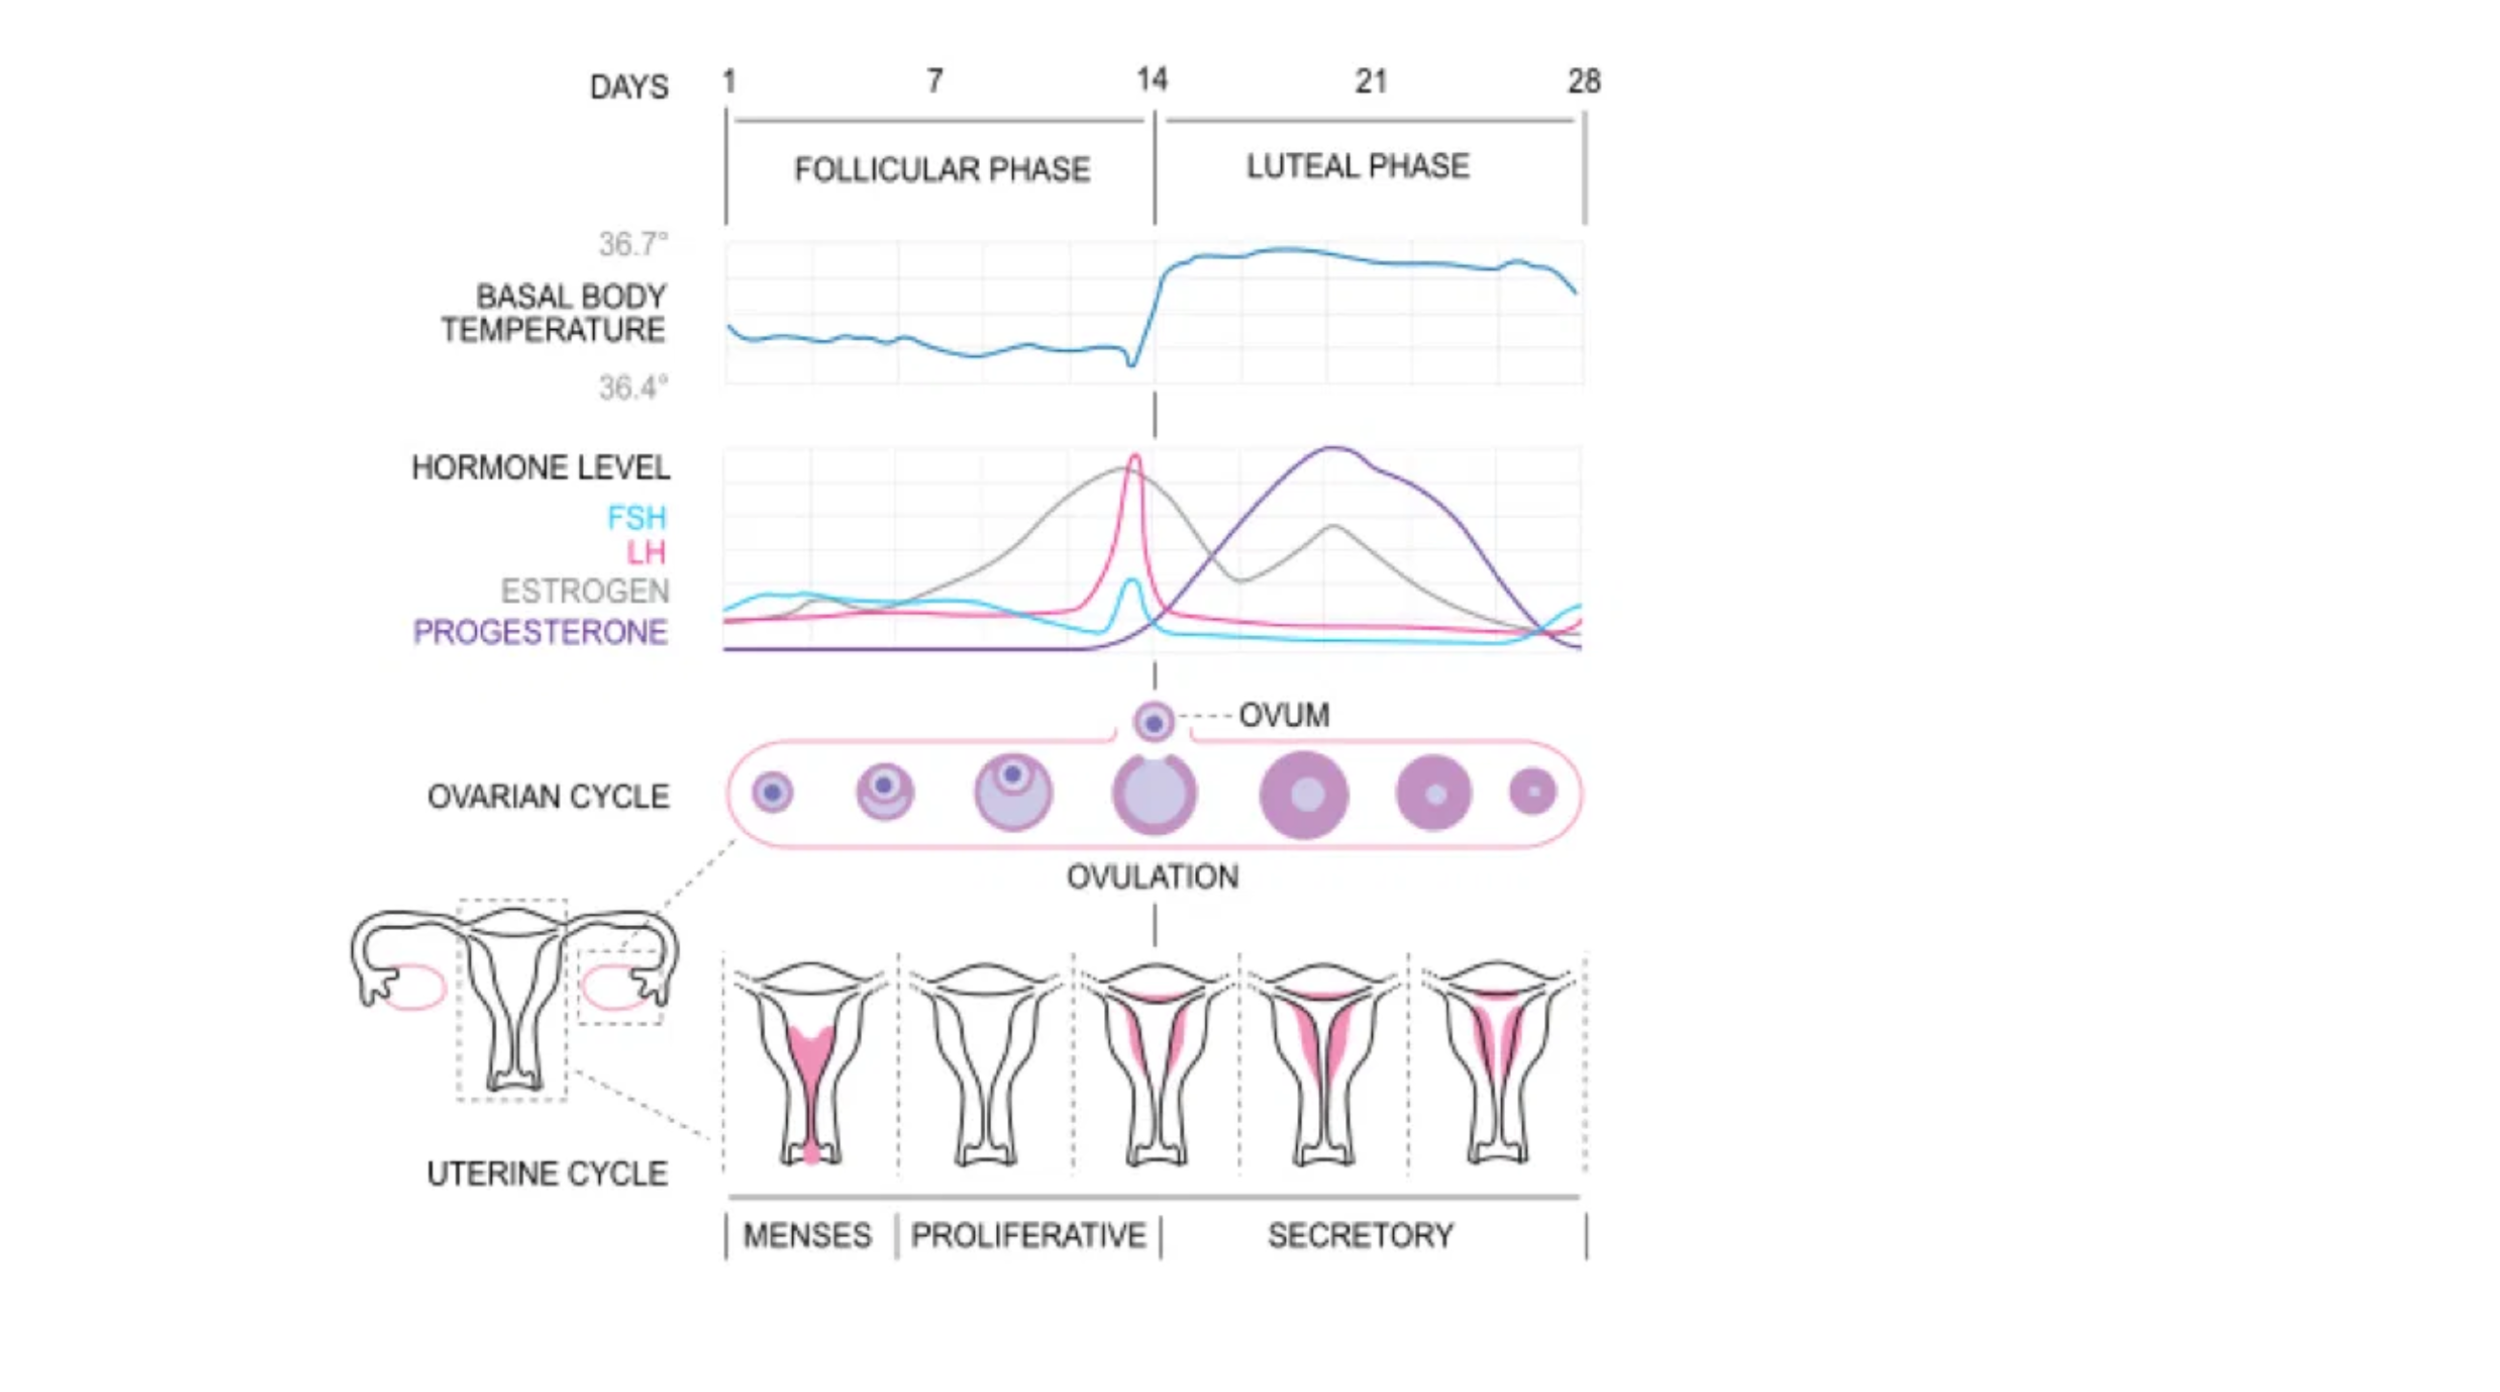 Cuantos días después de tomar progesterona viene la menstruación